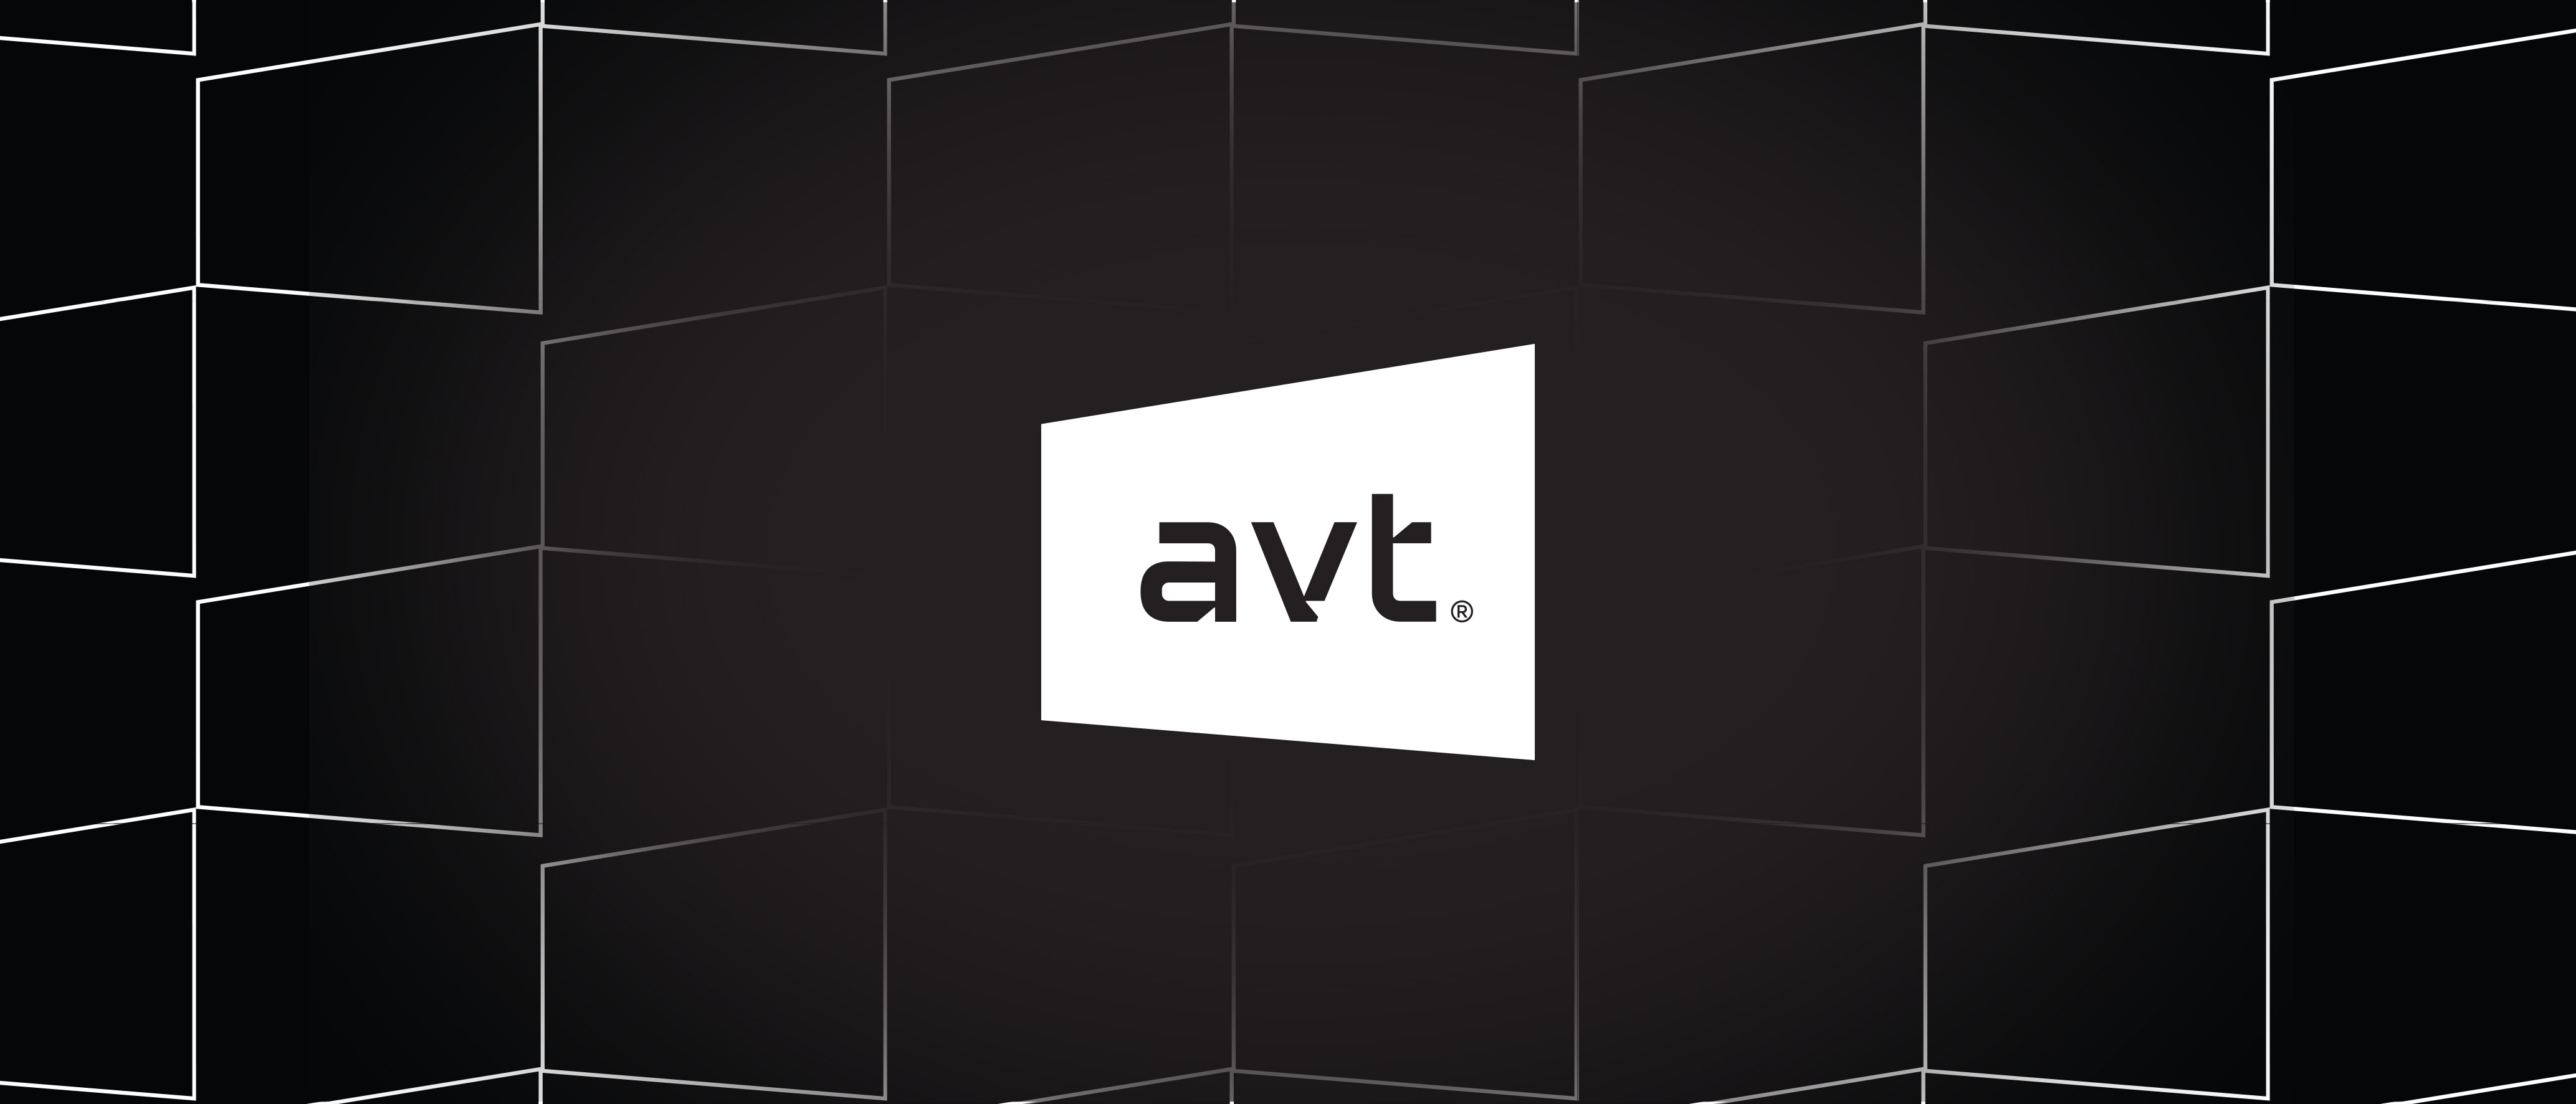 AVT ReBranding – Telling stories Through Space